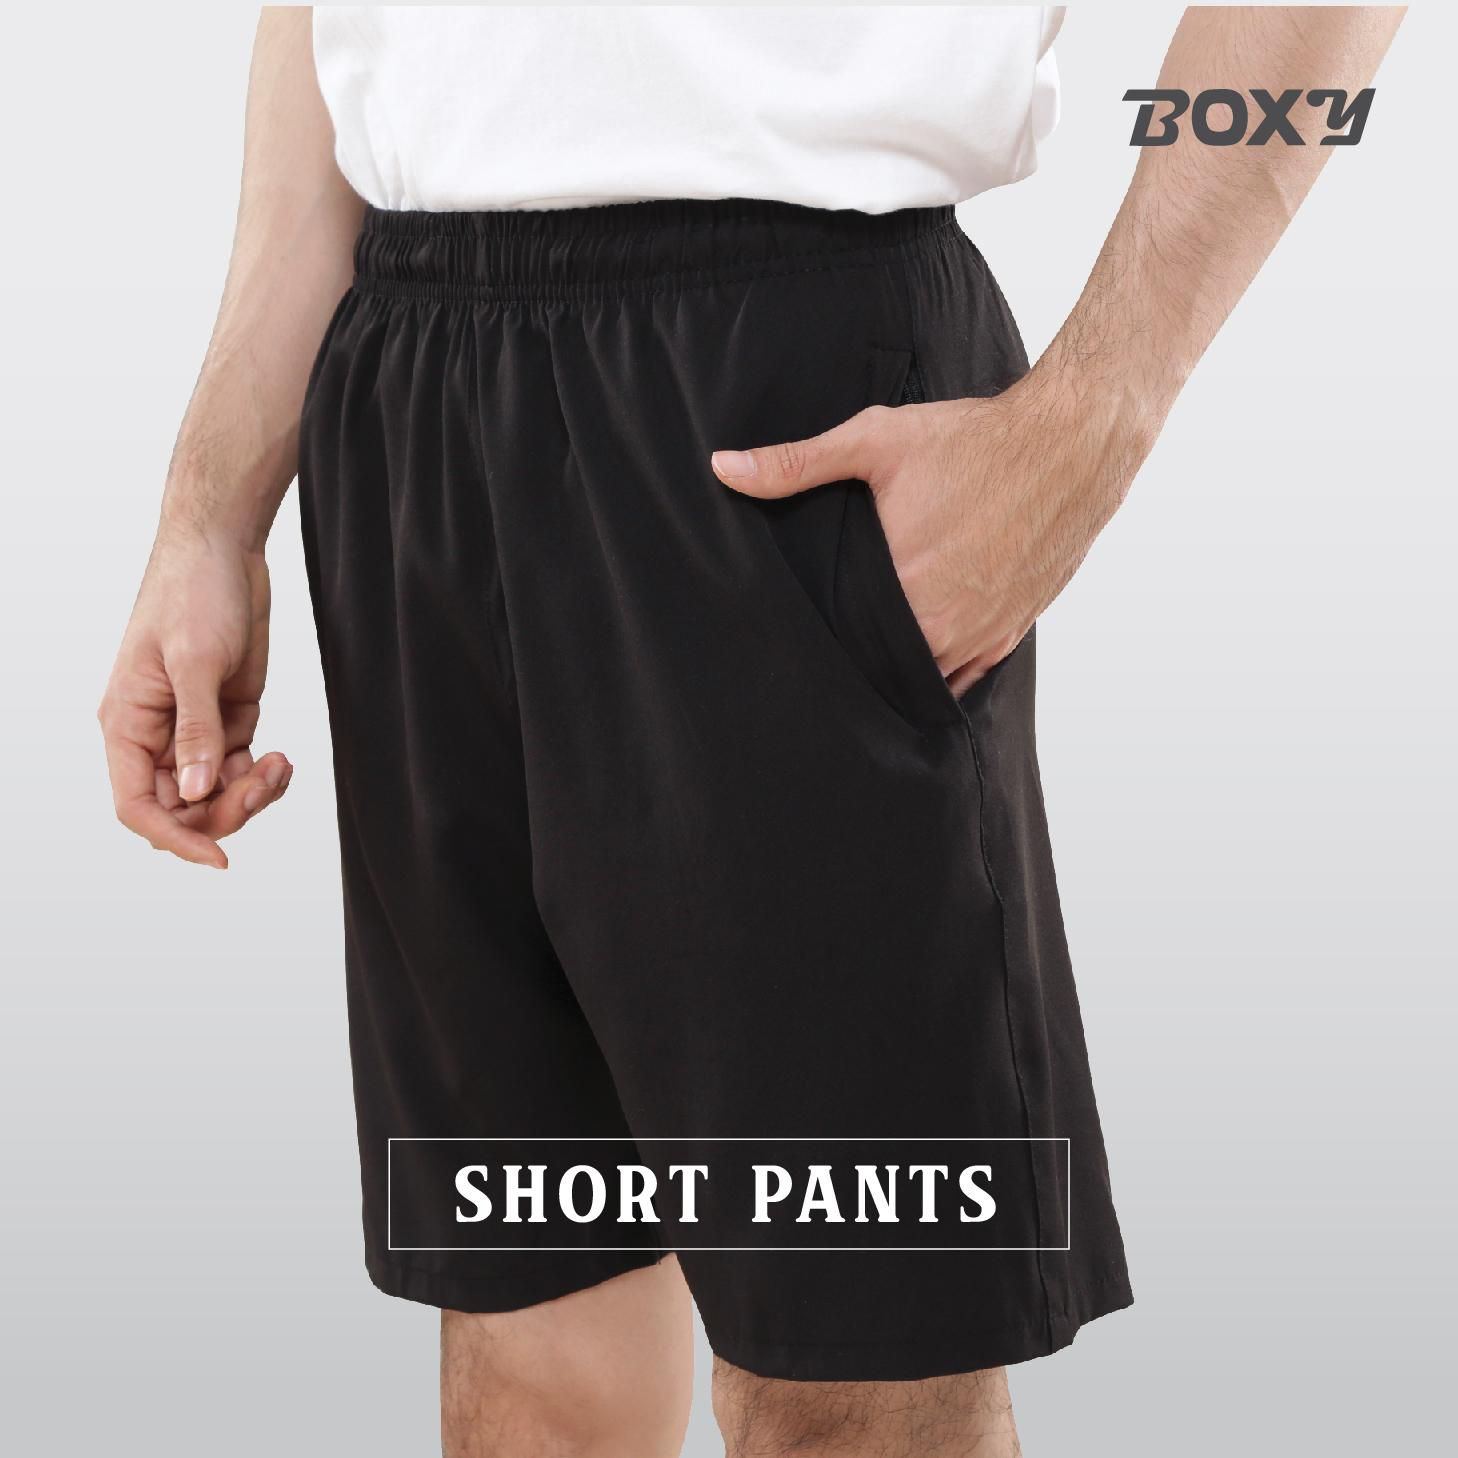 Boxy Athleisure Short Pants - 6 Sizes (Black)